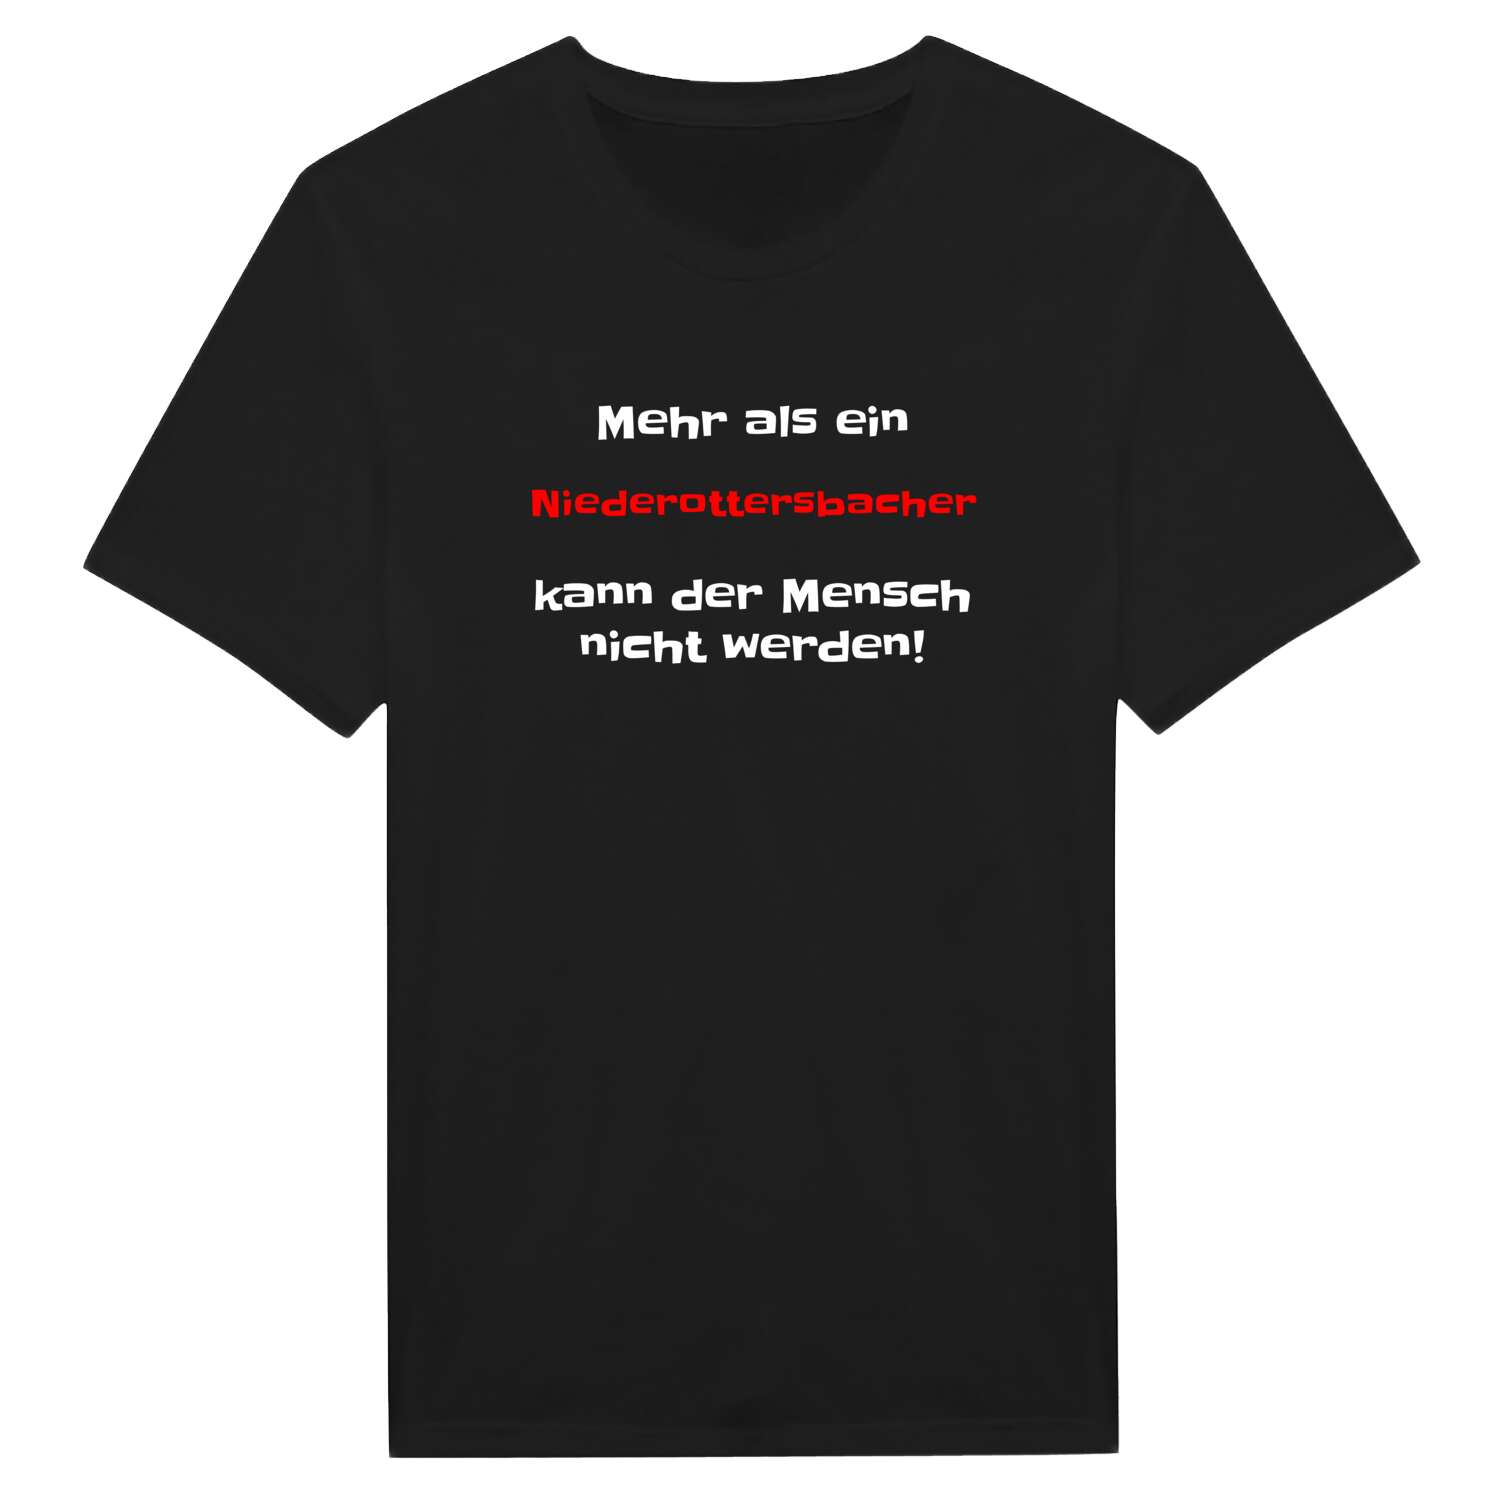 Niederottersbach T-Shirt »Mehr als ein«